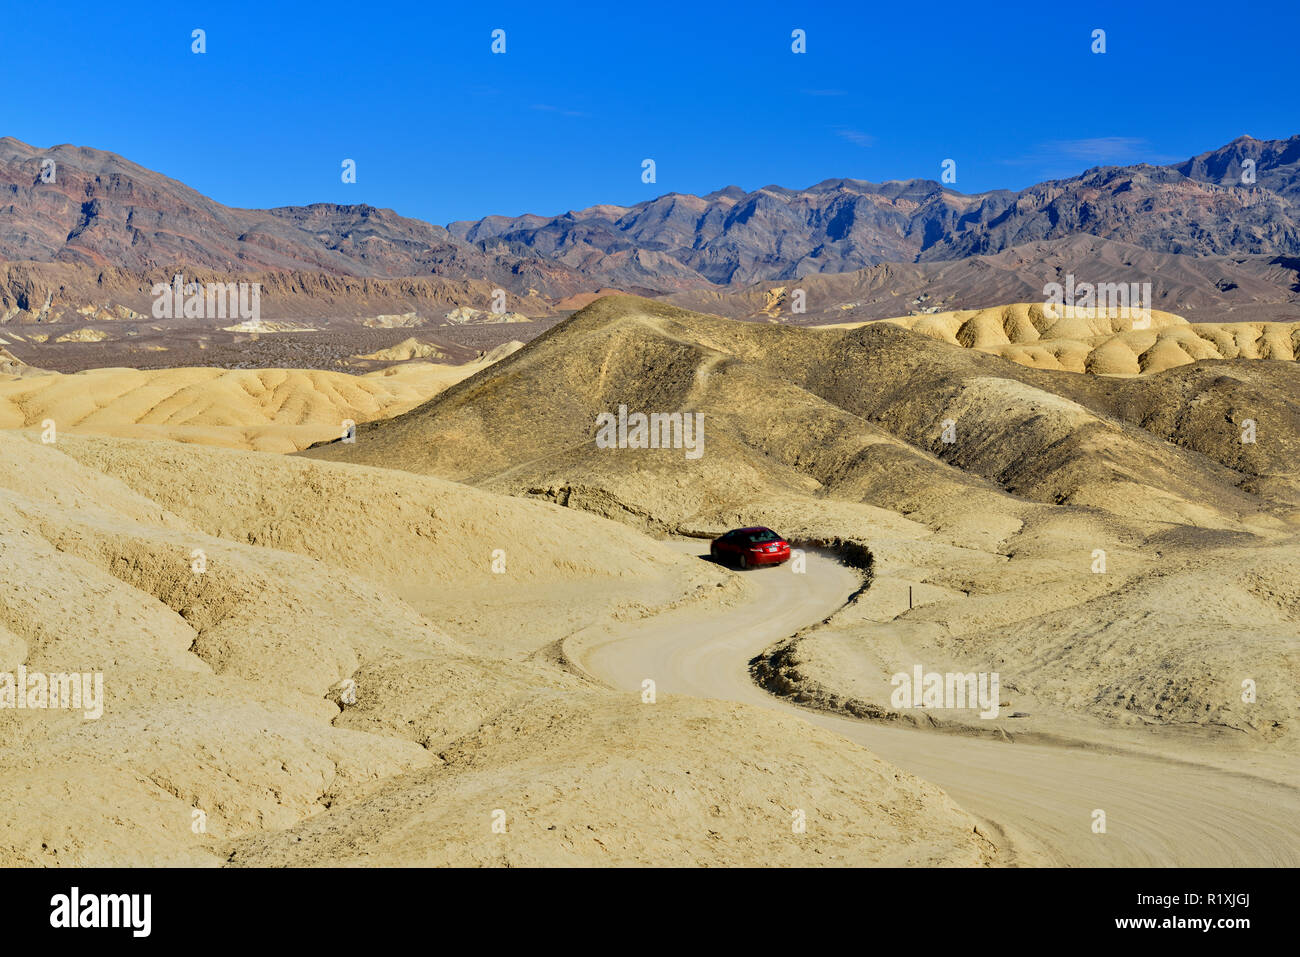 20 Mule Team Canyon Scenic Drive mit touristischen Fahrzeug, Death Valley National Park, Kalifornien, USA Stockfoto